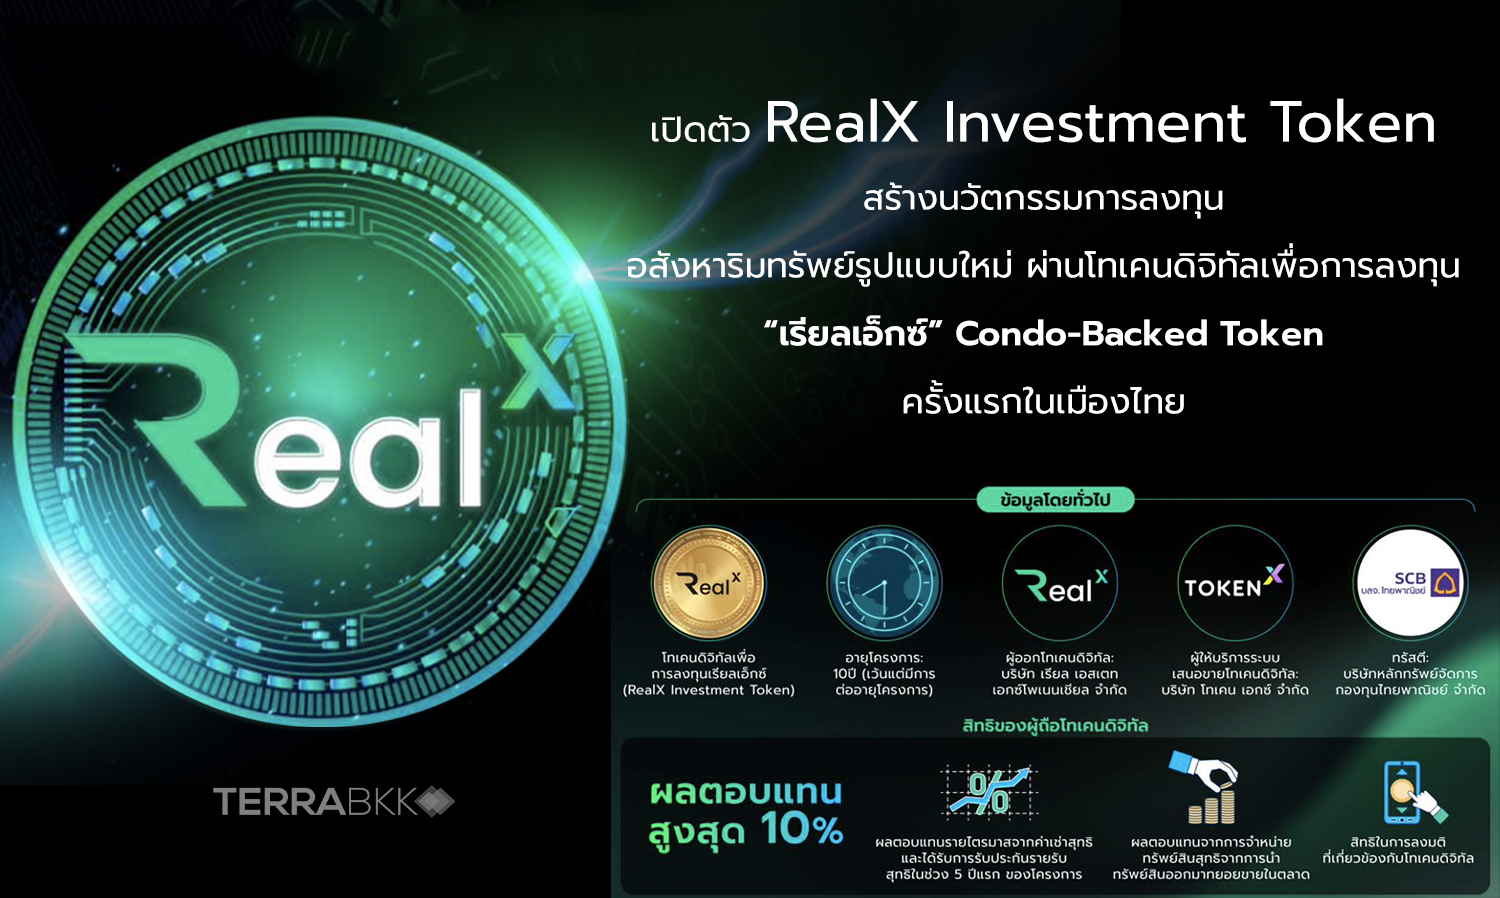 เปิดตัว RealX Investment Token สร้างนวัตกรรมการลงทุนอสังหาริมทรัพย์รูปแบบใหม่ ผ่านโทเคนดิจิทัลเพื่อการลงทุน “เรียลเอ็กซ์” Condo-Backed Token ครั้งแรกในเมืองไทย 